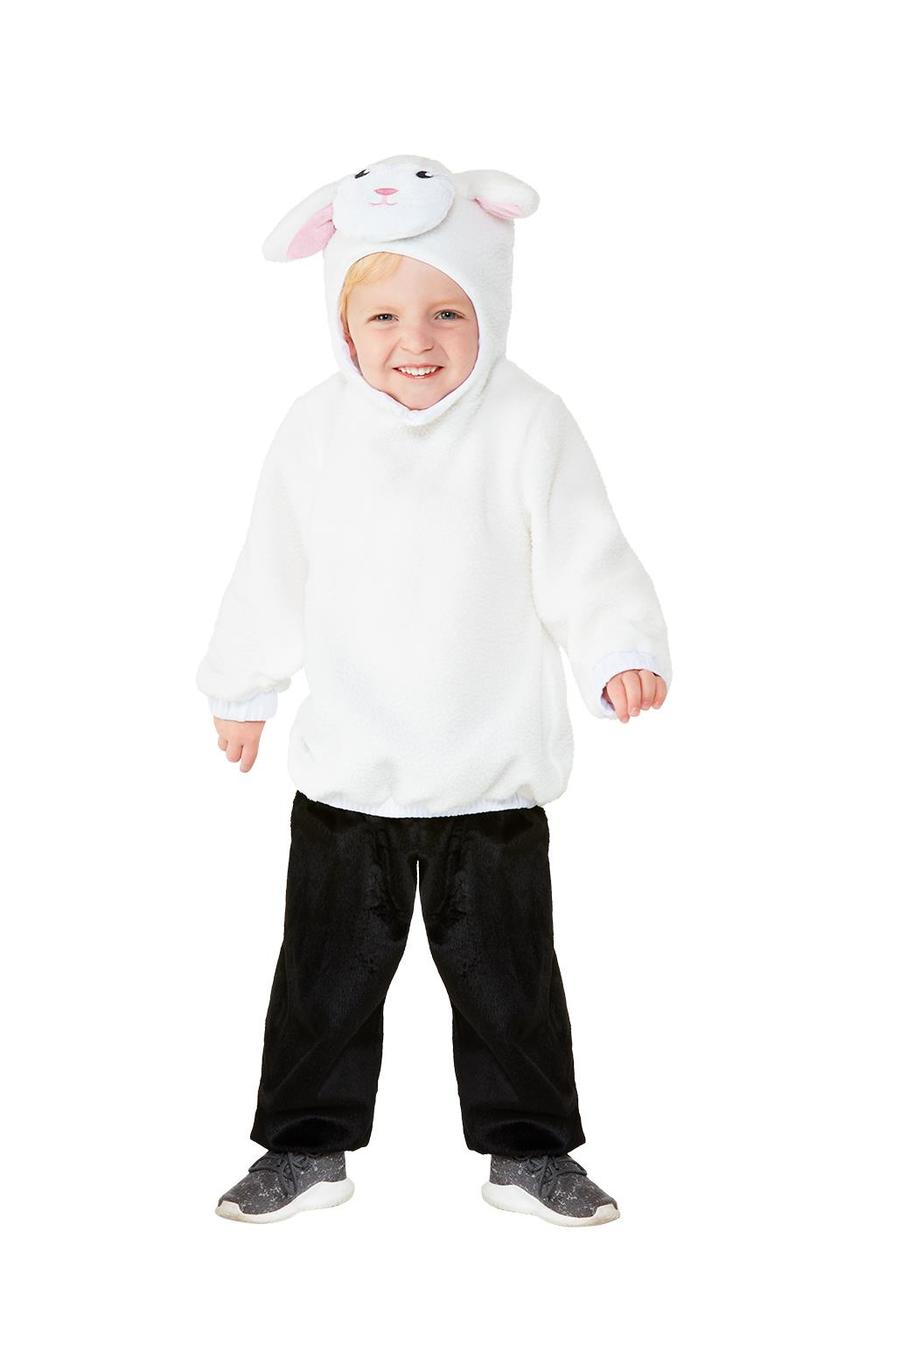 Toddler_Lamb_Costume